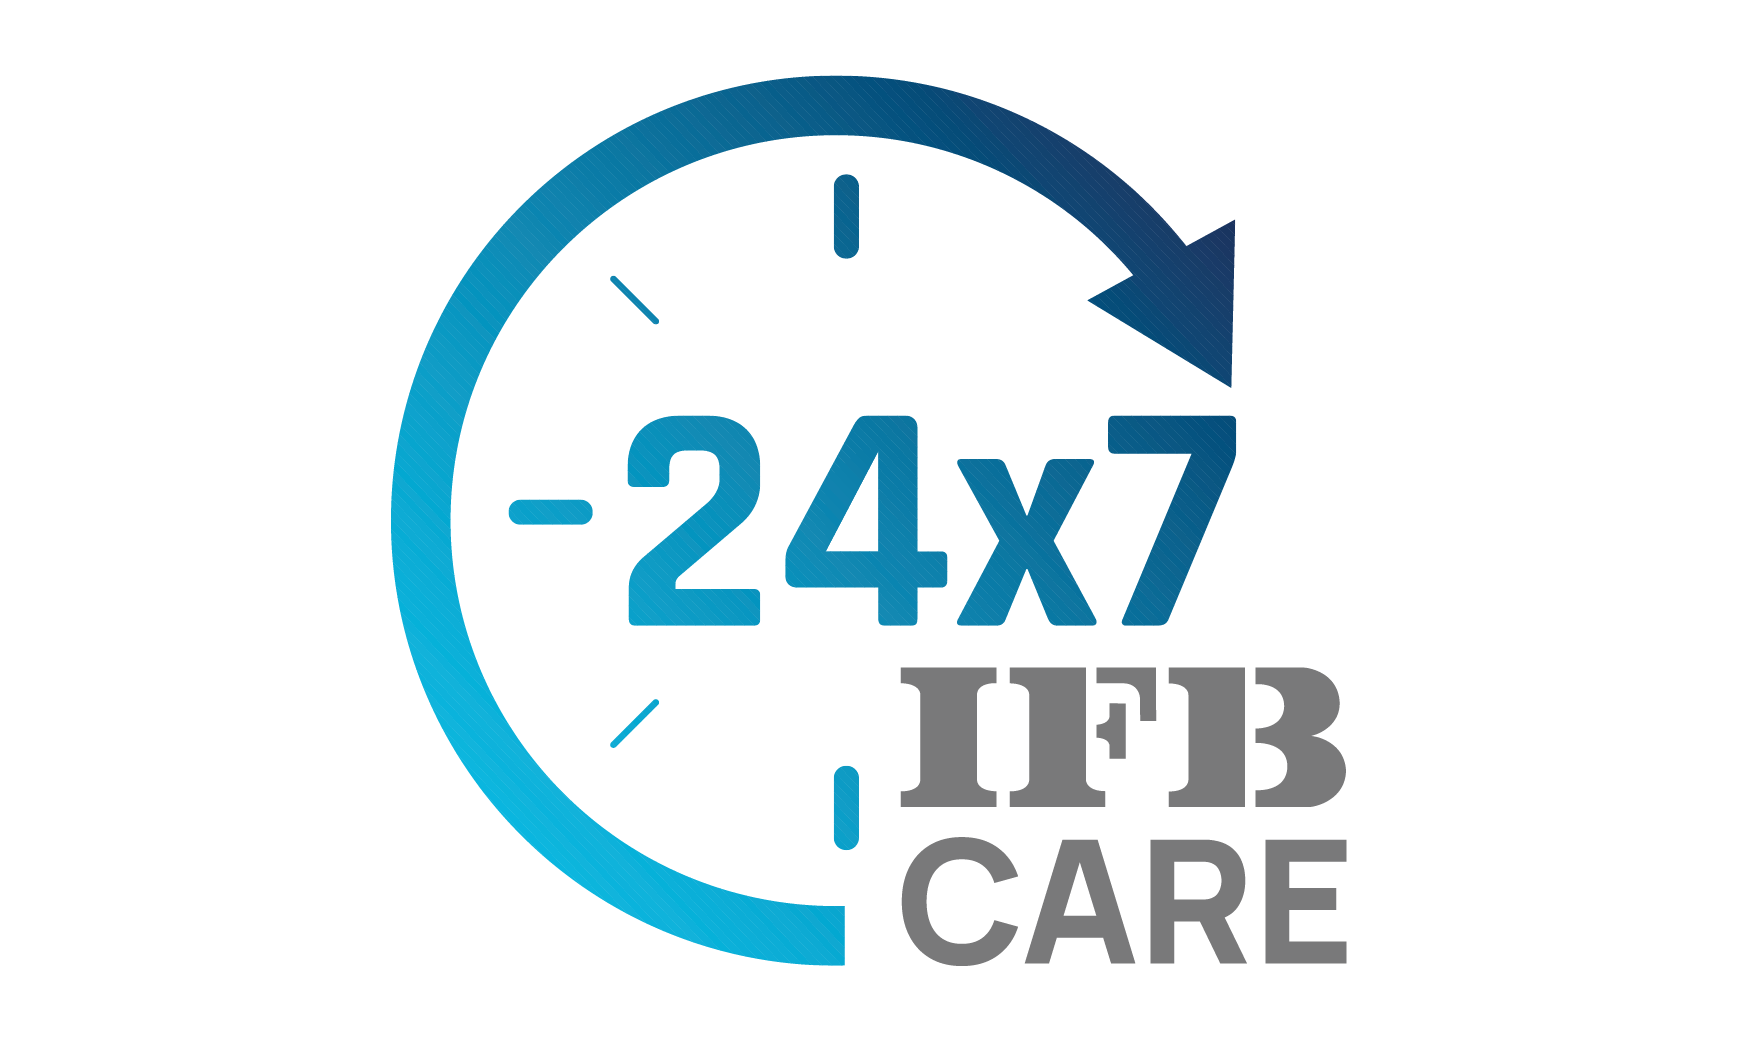 IFB Care